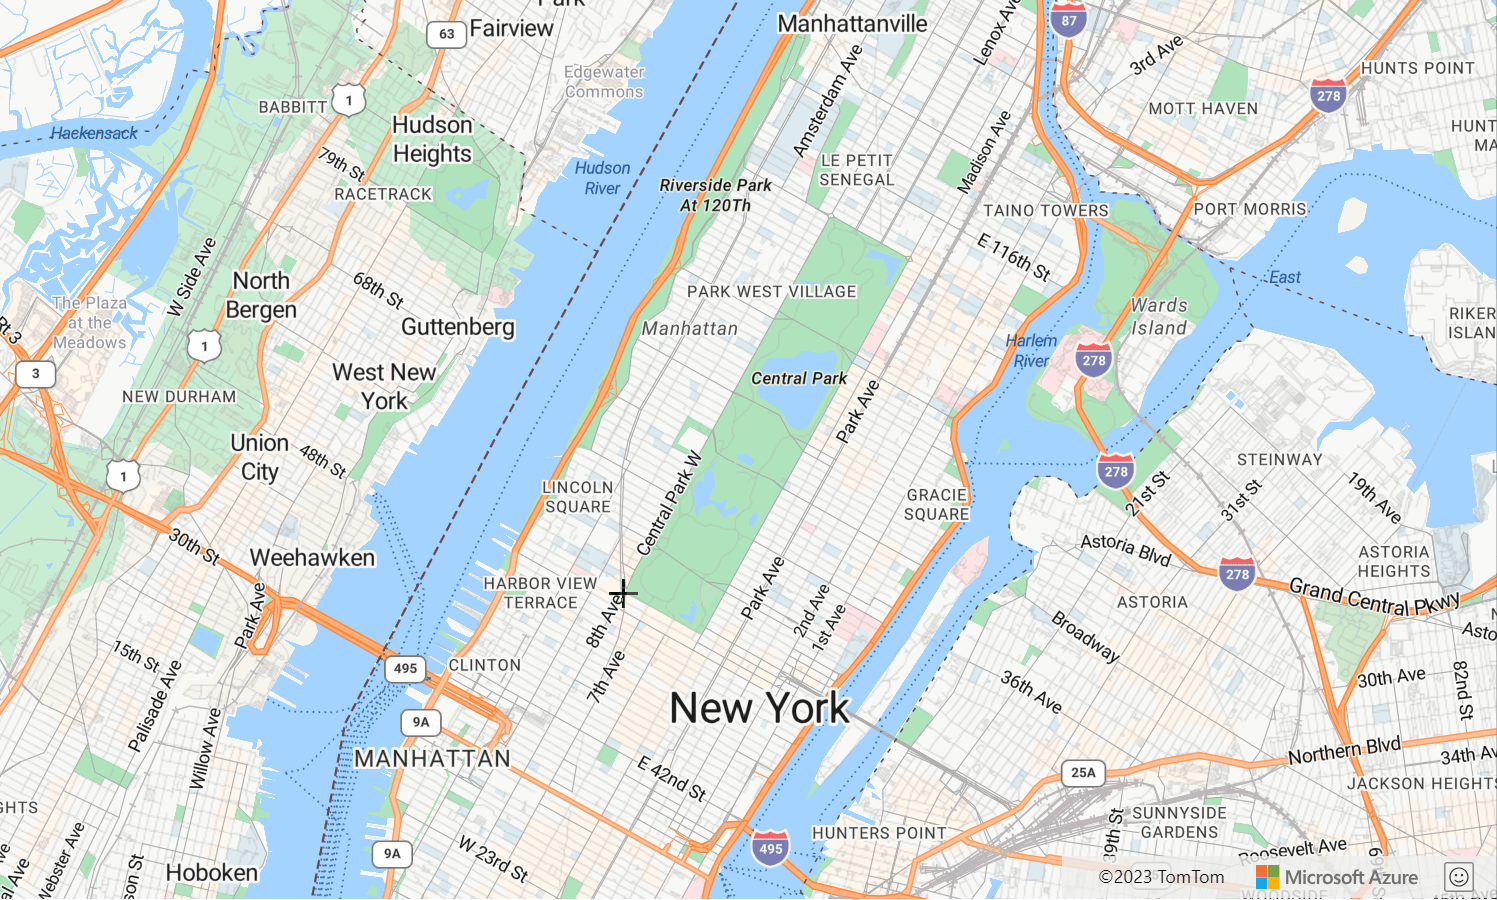 Zrzut ekranu przedstawiający mapę przedstawiającą park centralny w Nowym Jorku, w którym menedżer rysunku jest pokazany przez linię rysunkową.